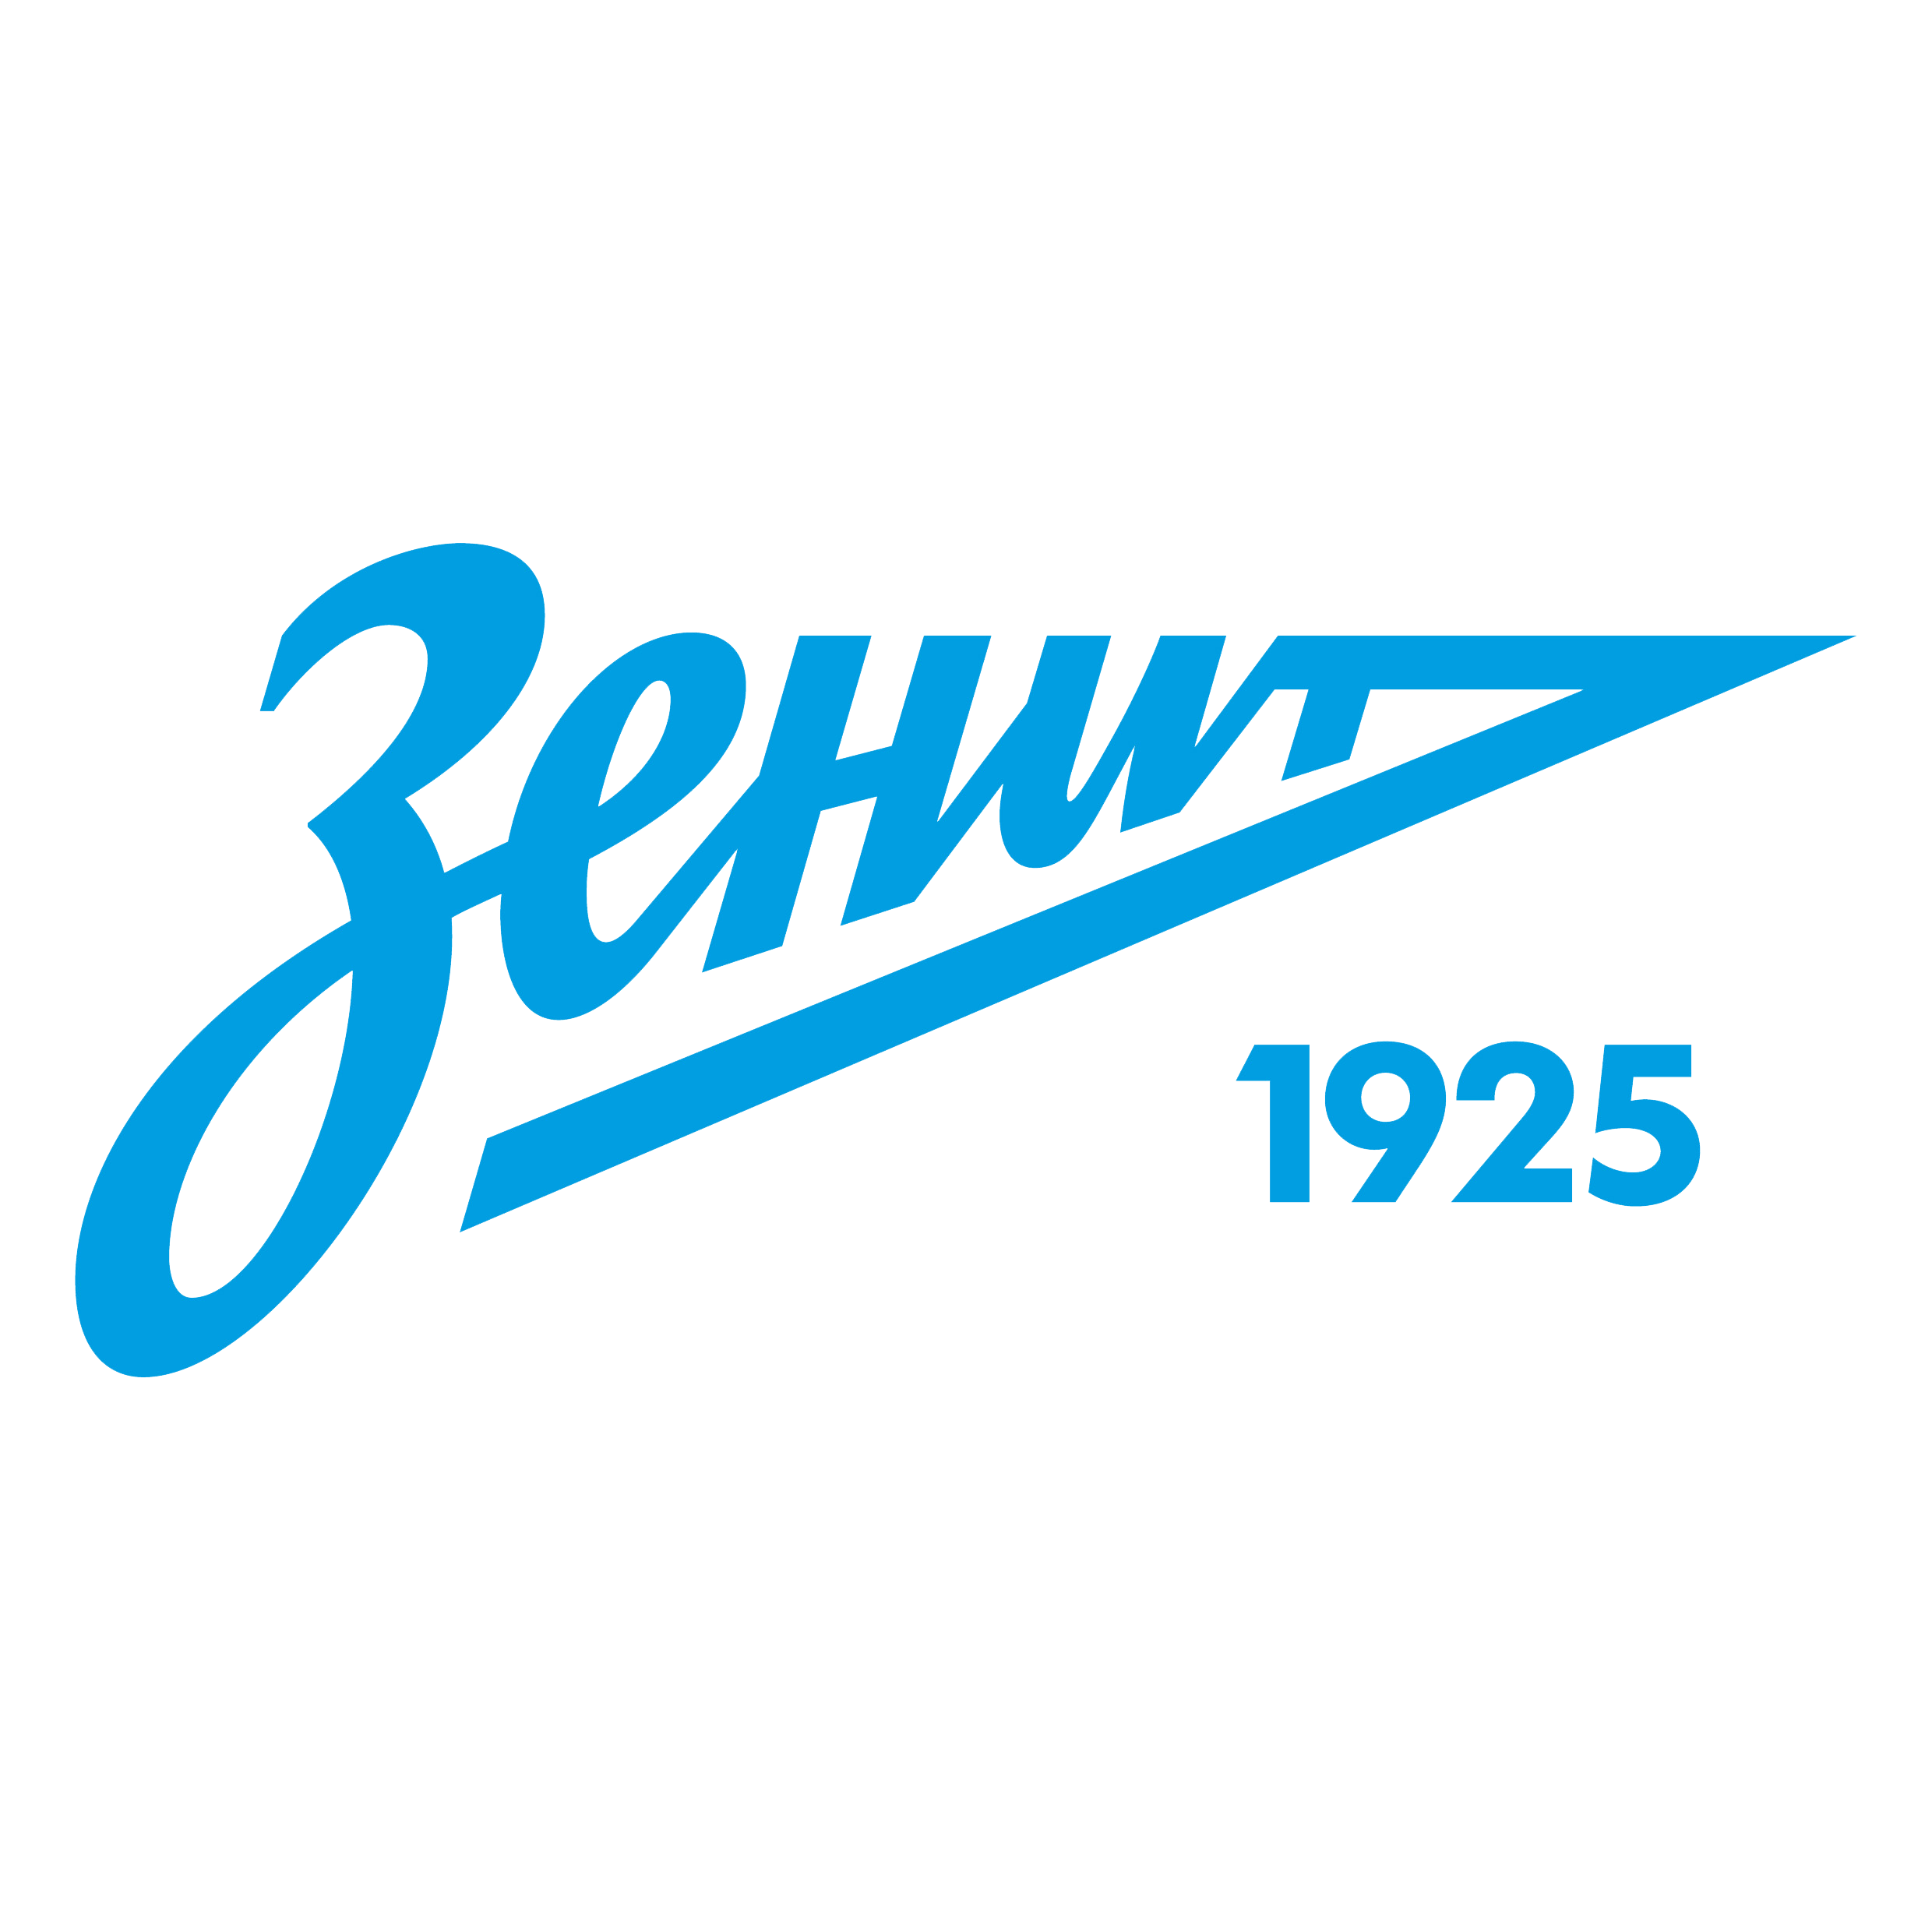 «Зенит-2» получил собственное шоу на клубном телеканале (ВИДЕО)